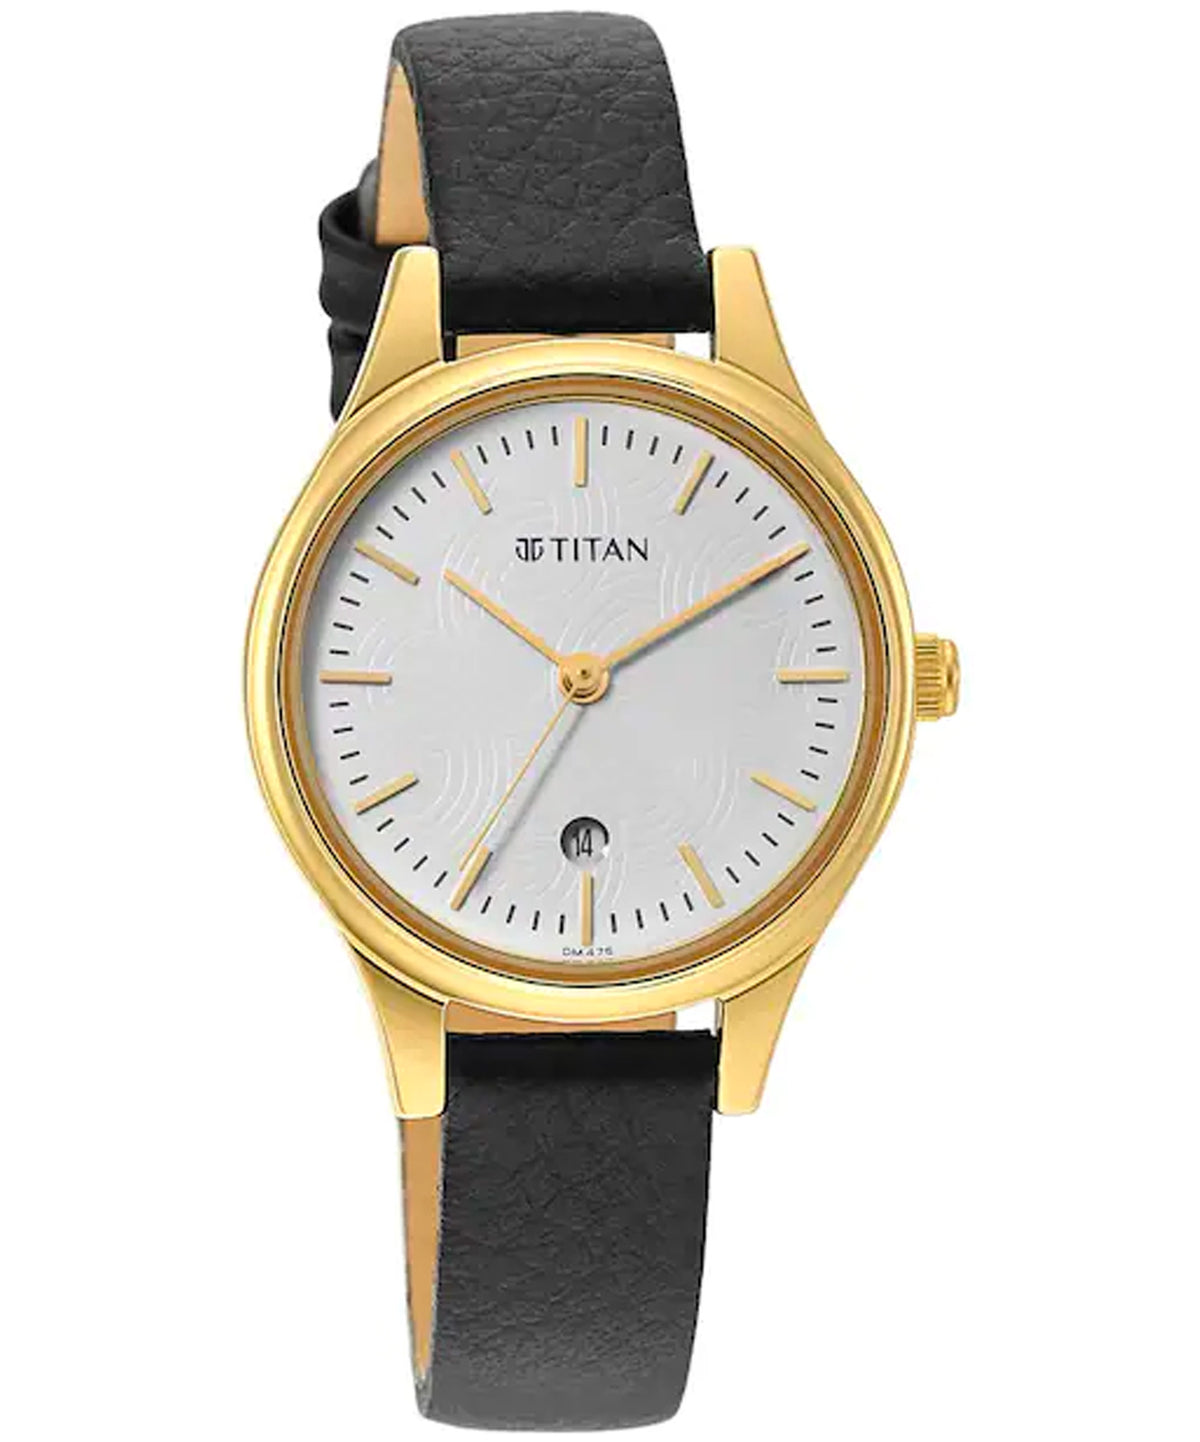 Titan Women's Watch White Dial Black Leather Strap Watch, 2679YL01